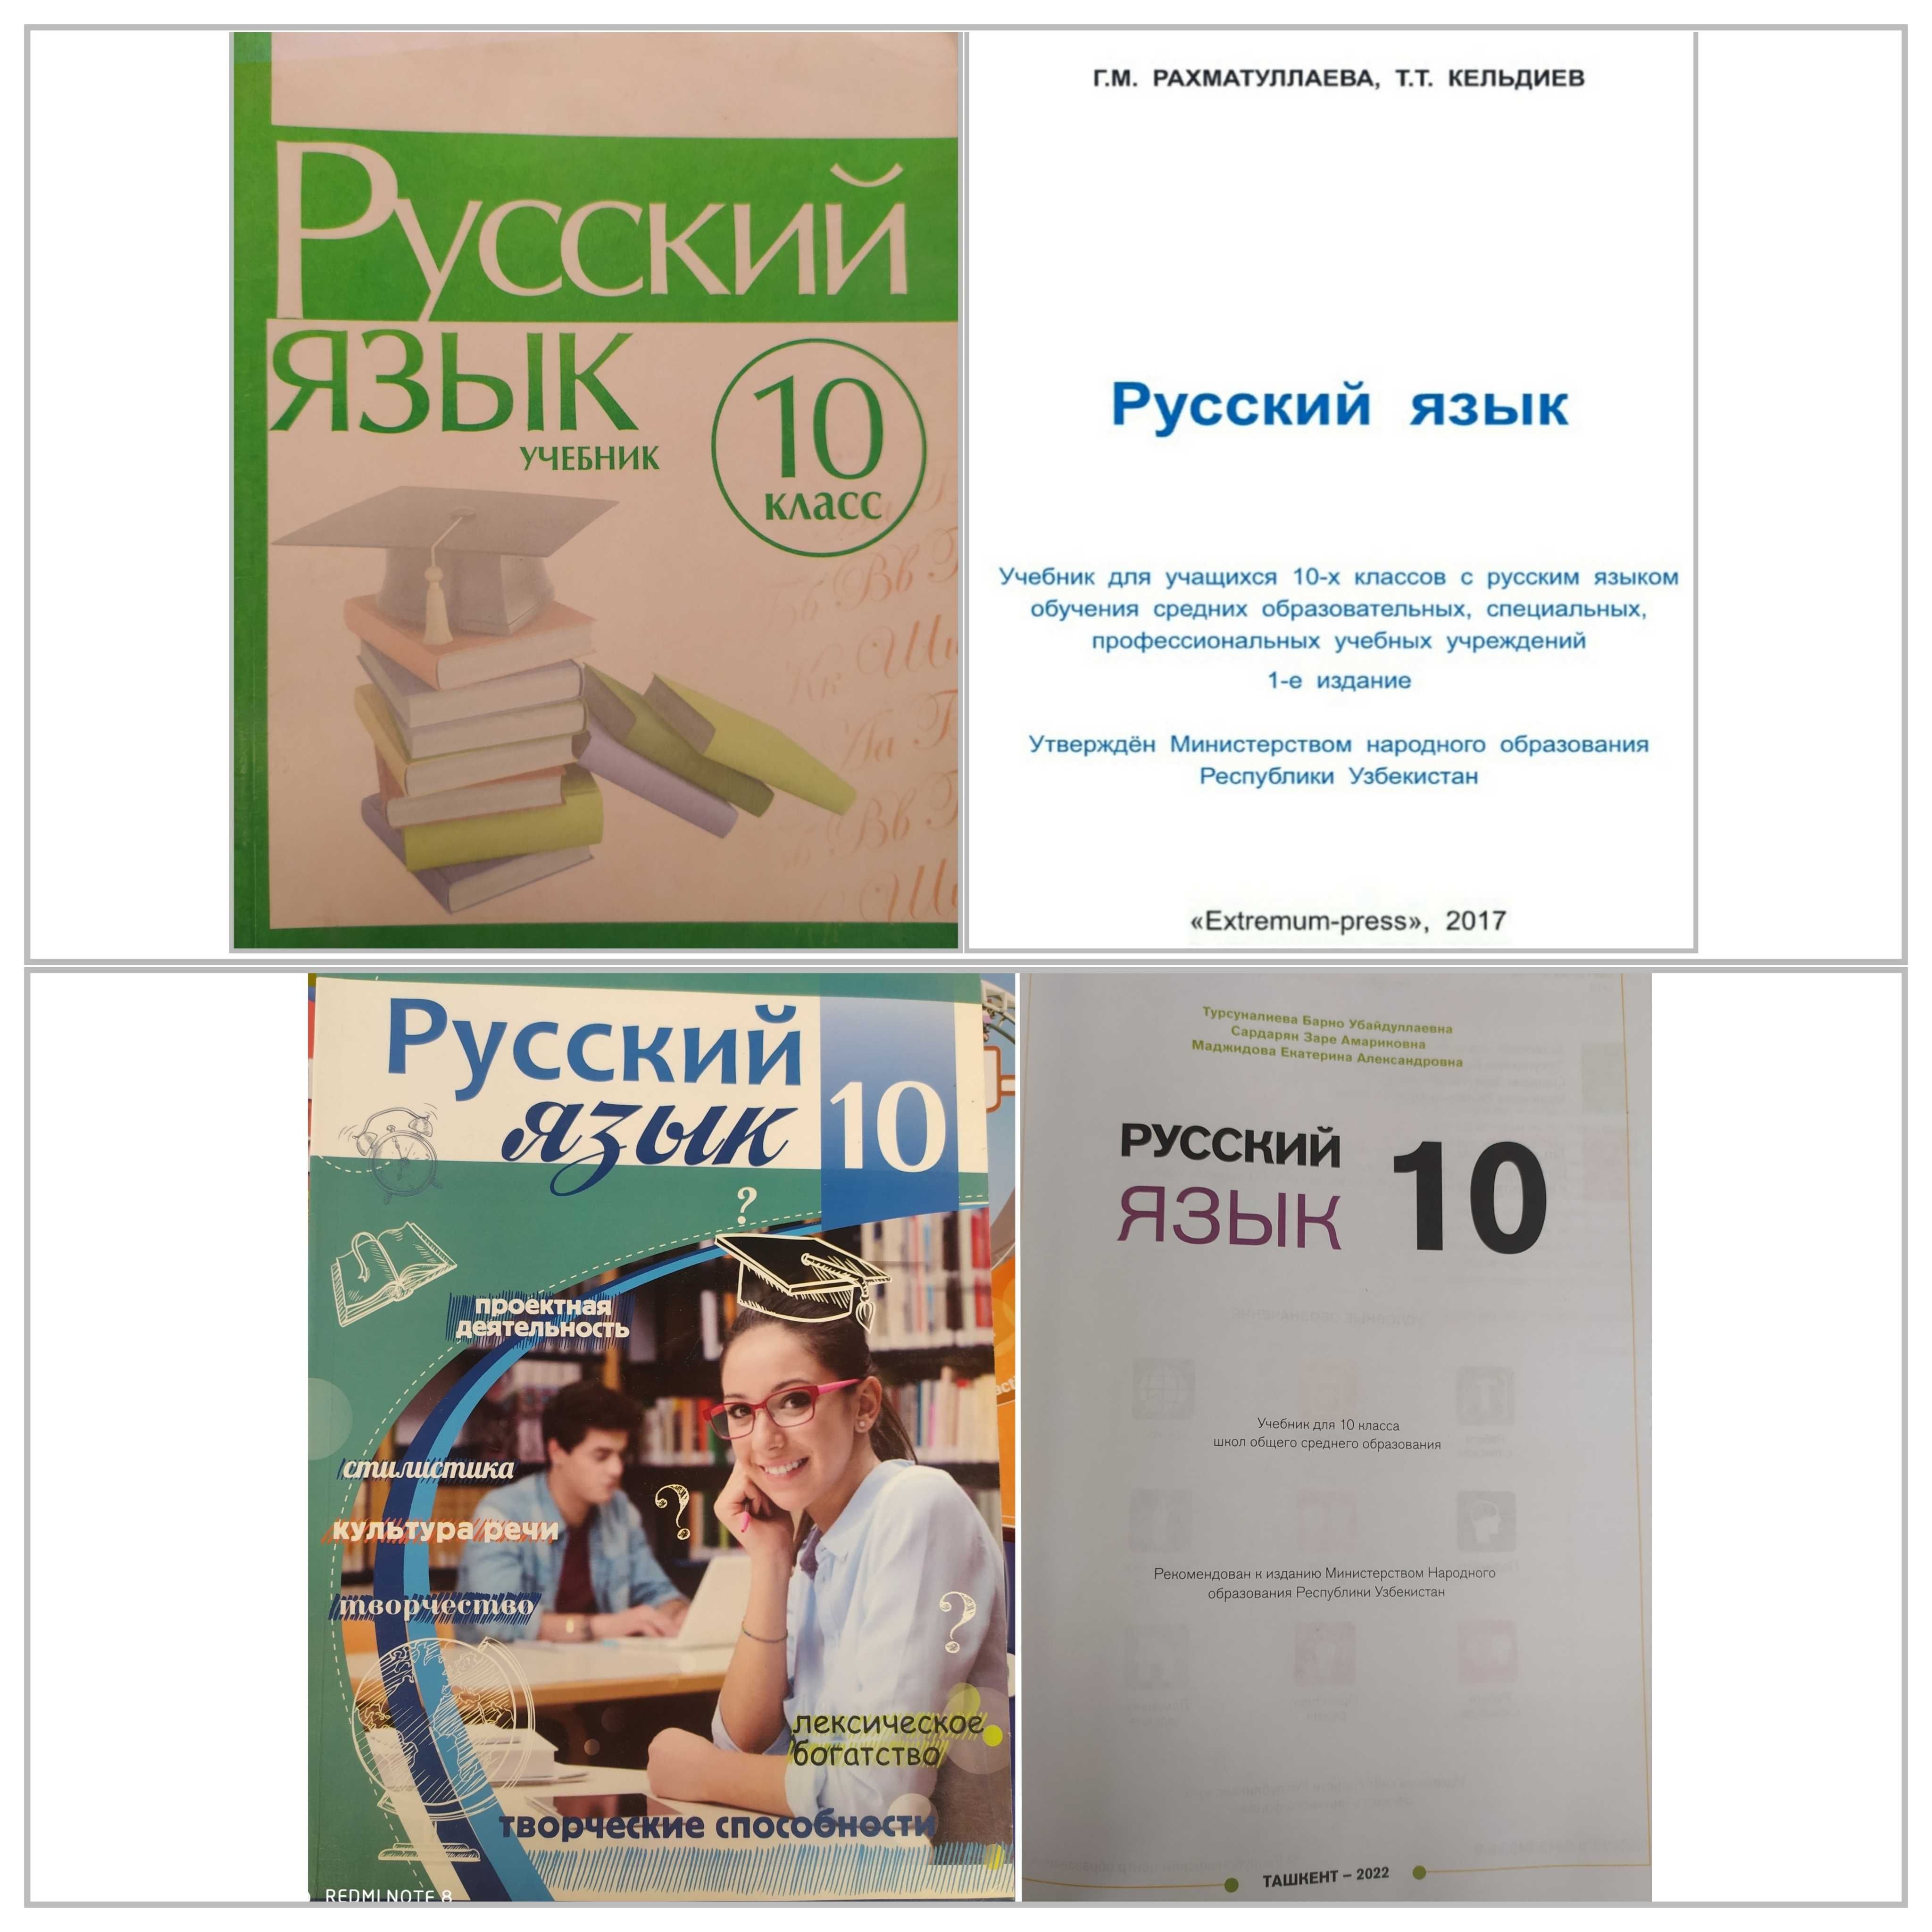 Русский язык 1,2,3,4,5,6,7,8,9,10,11 класс